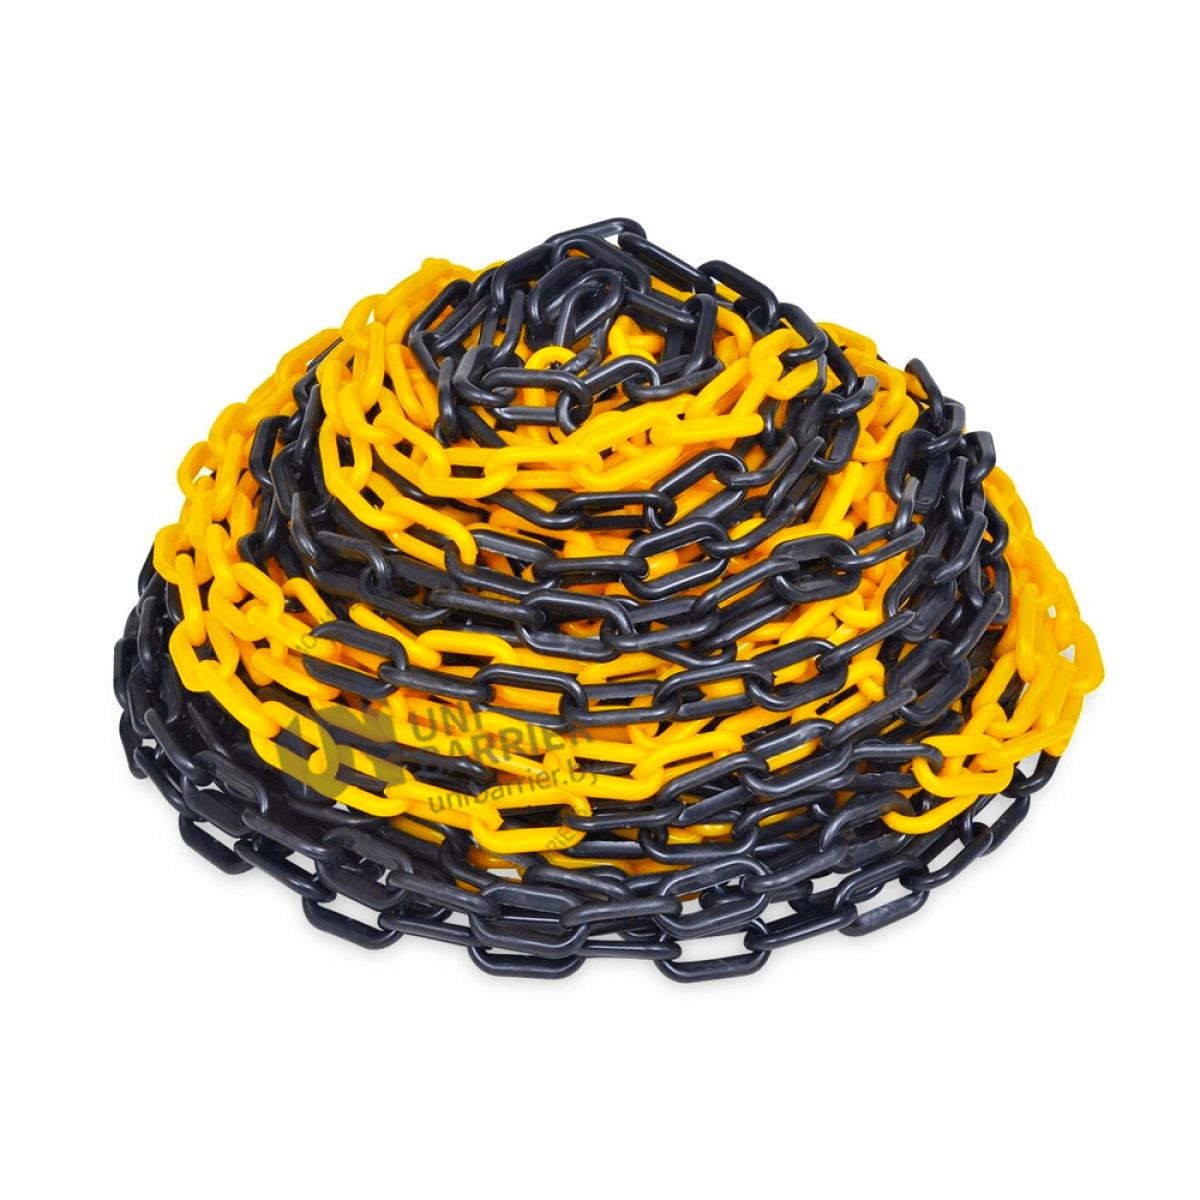 991353 Стойка ограждения с цепью пластиковая желтая основание на колесиках желто-черная цепь